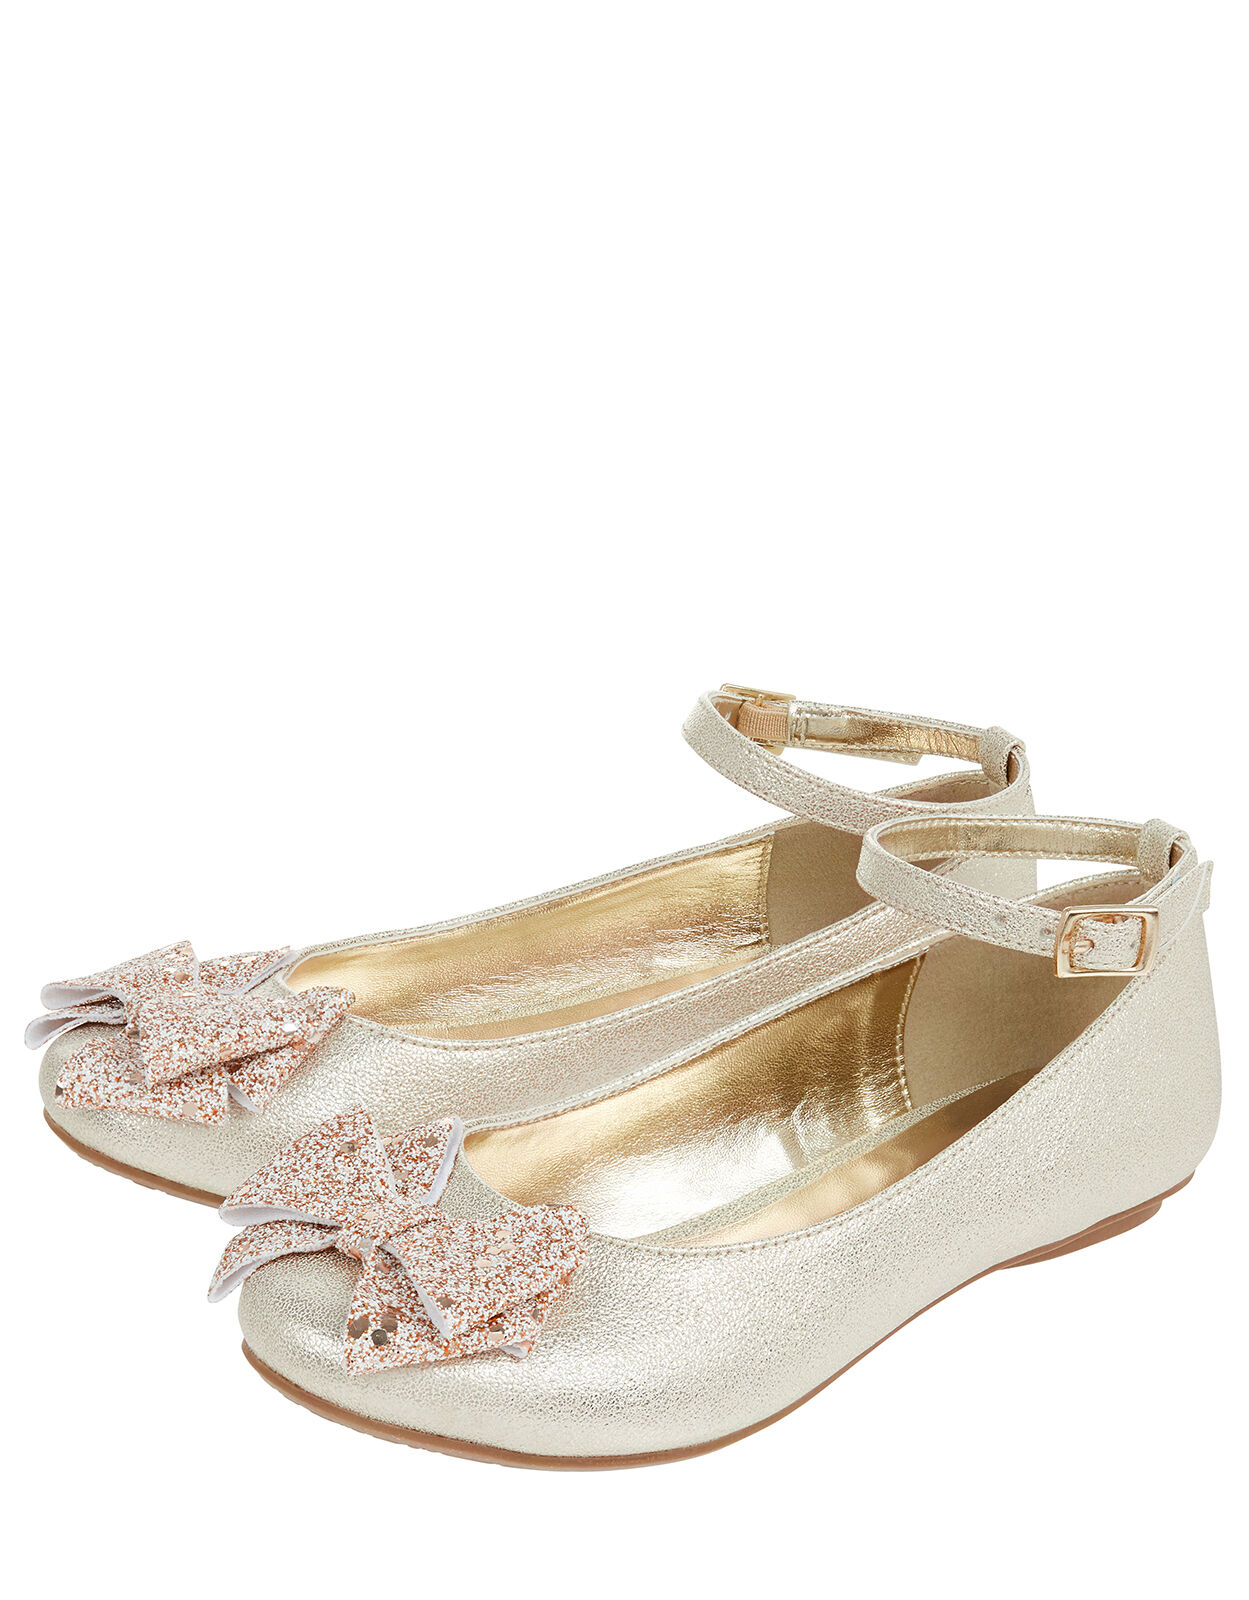 Giselle Glitter Bow Ballerina Shoes 